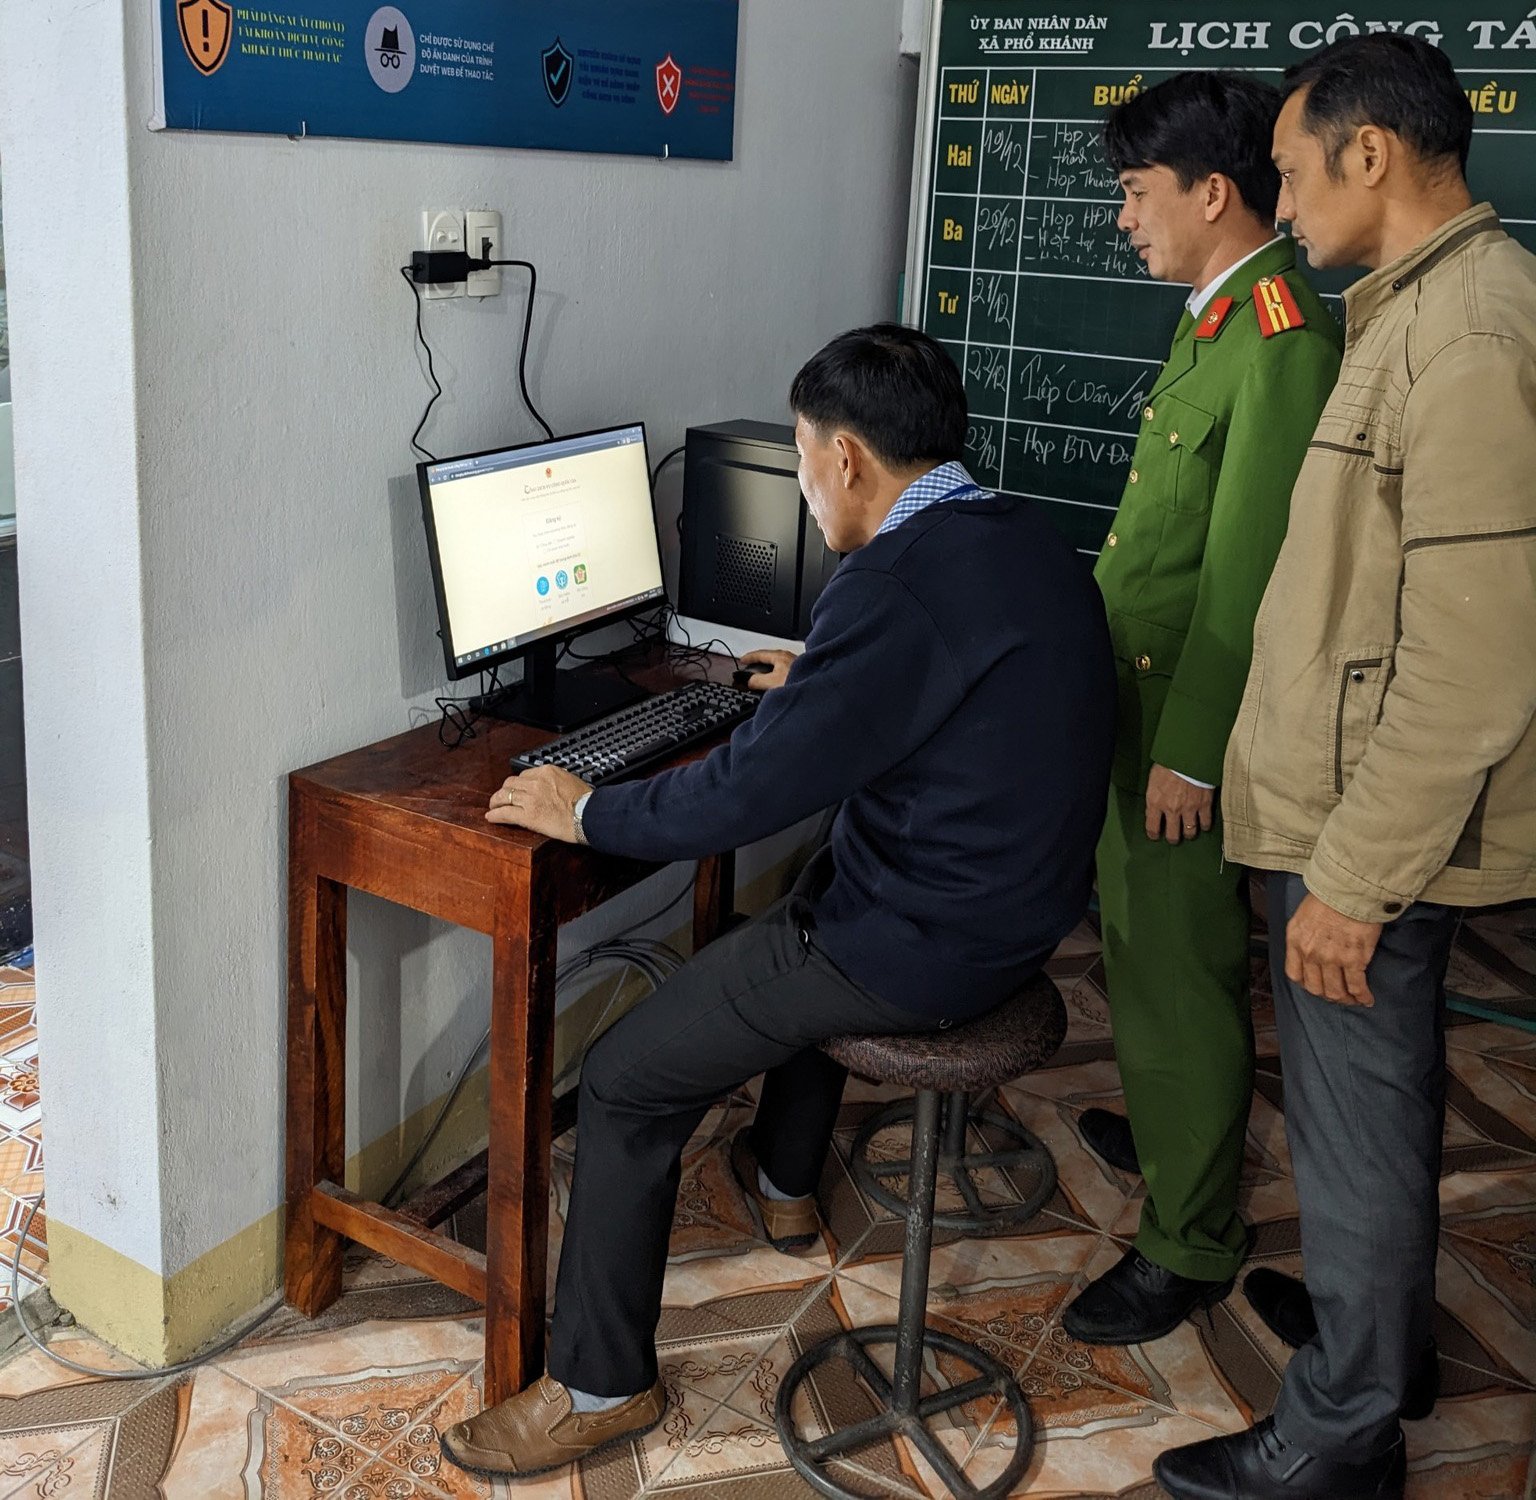 Uỷ ban nhân dân xã Phổ Khánh ra mắt và đưa vào hoạt động 02 điểm dịch vụ công trực tuyến.